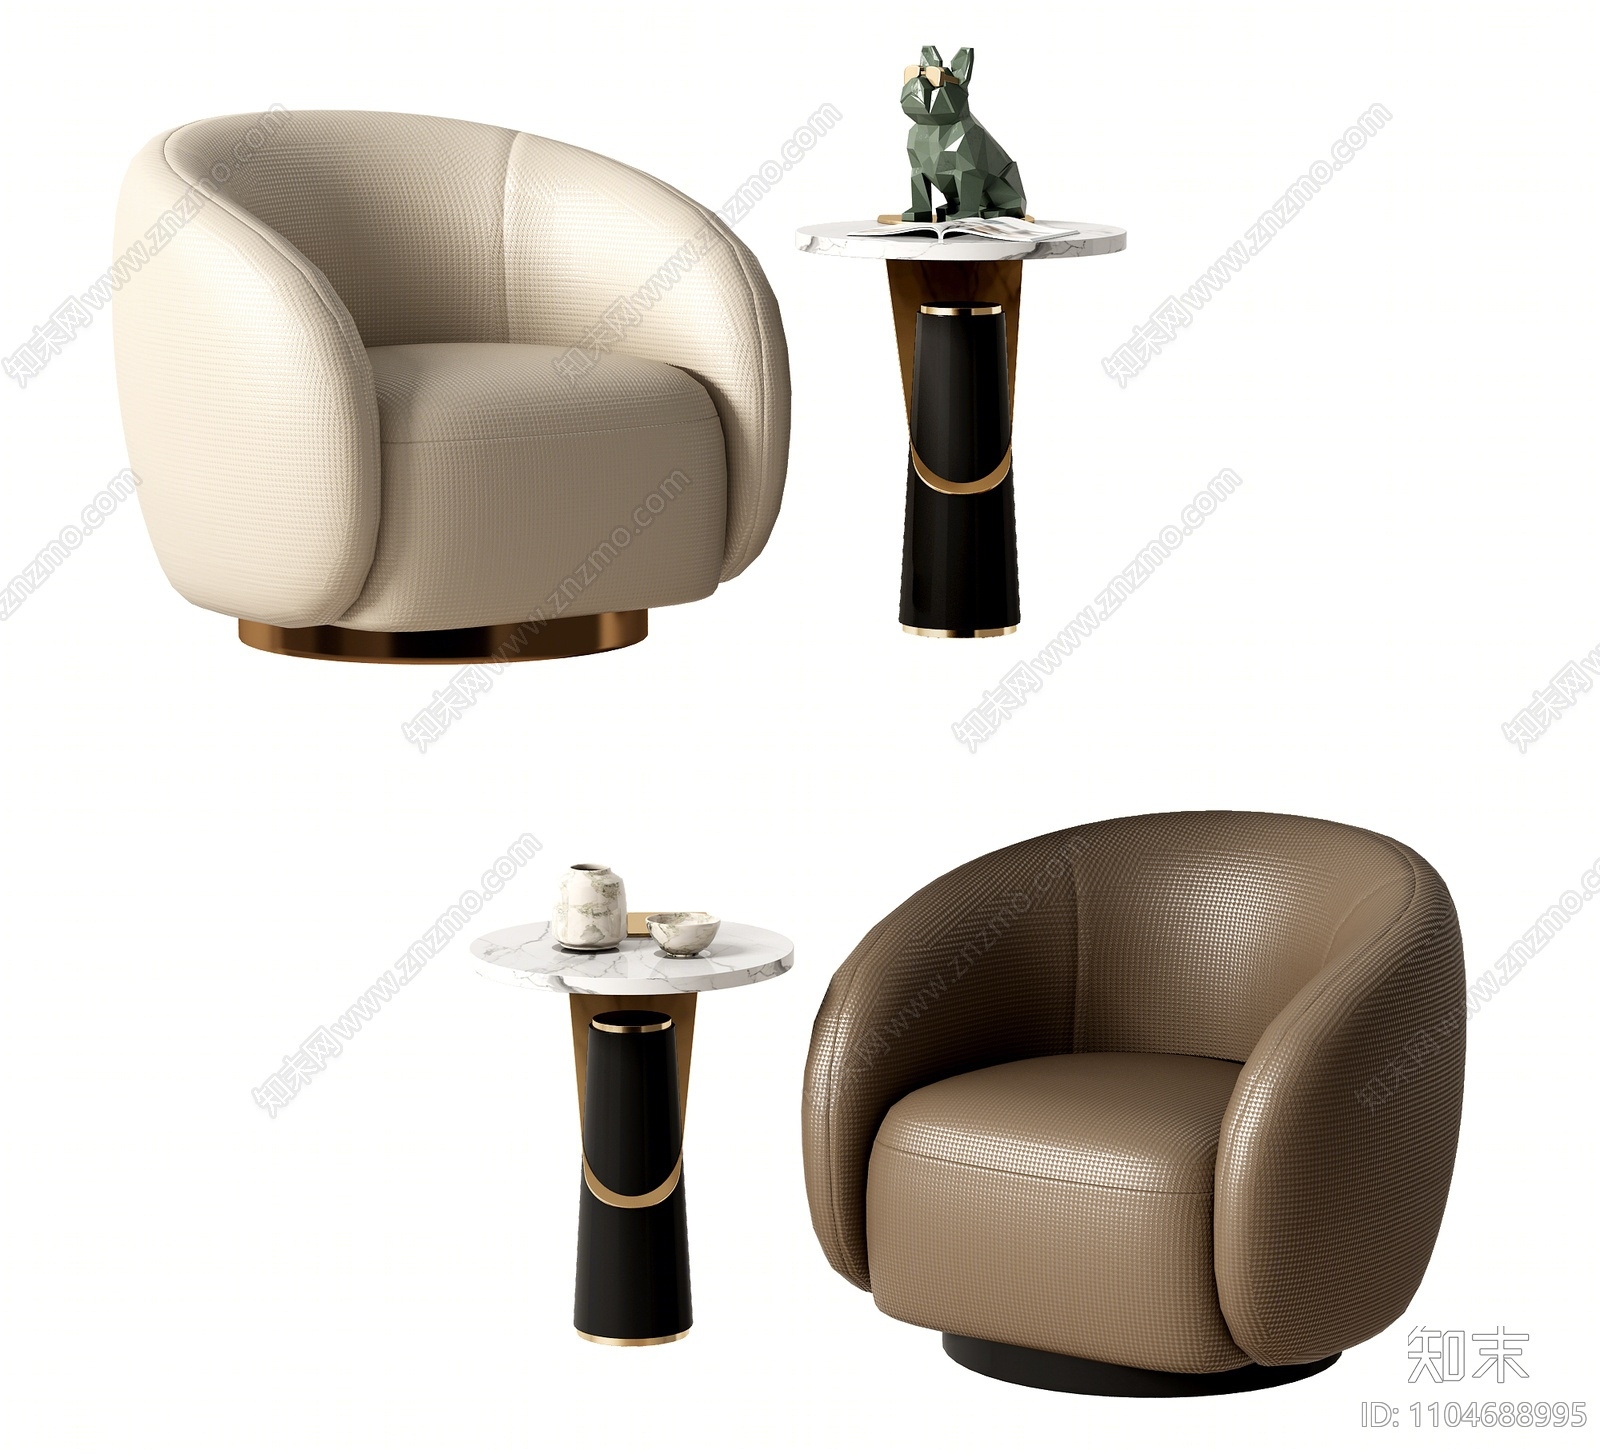 现代单人休闲沙发3D模型下载【ID:1104688995】